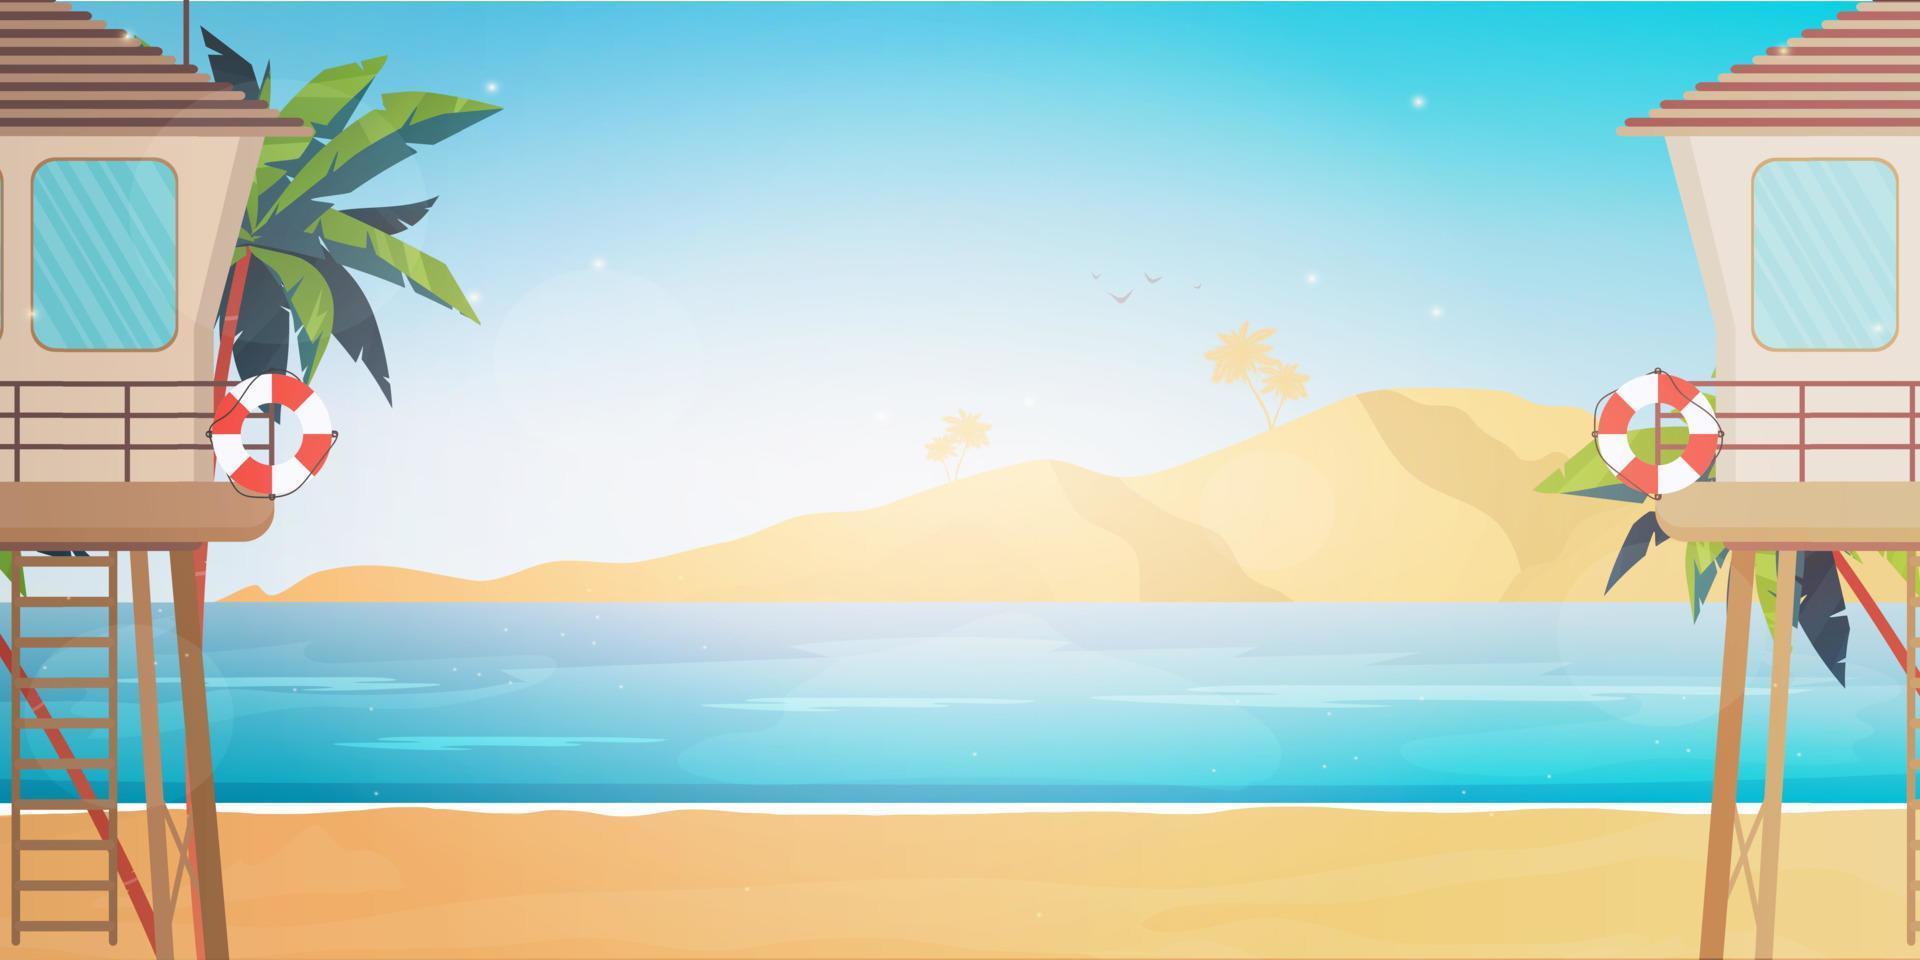 posto di salvataggio in spiaggia. spiaggia, palme, salvagente. stile cartone animato, illustrazione vettoriale. vettore